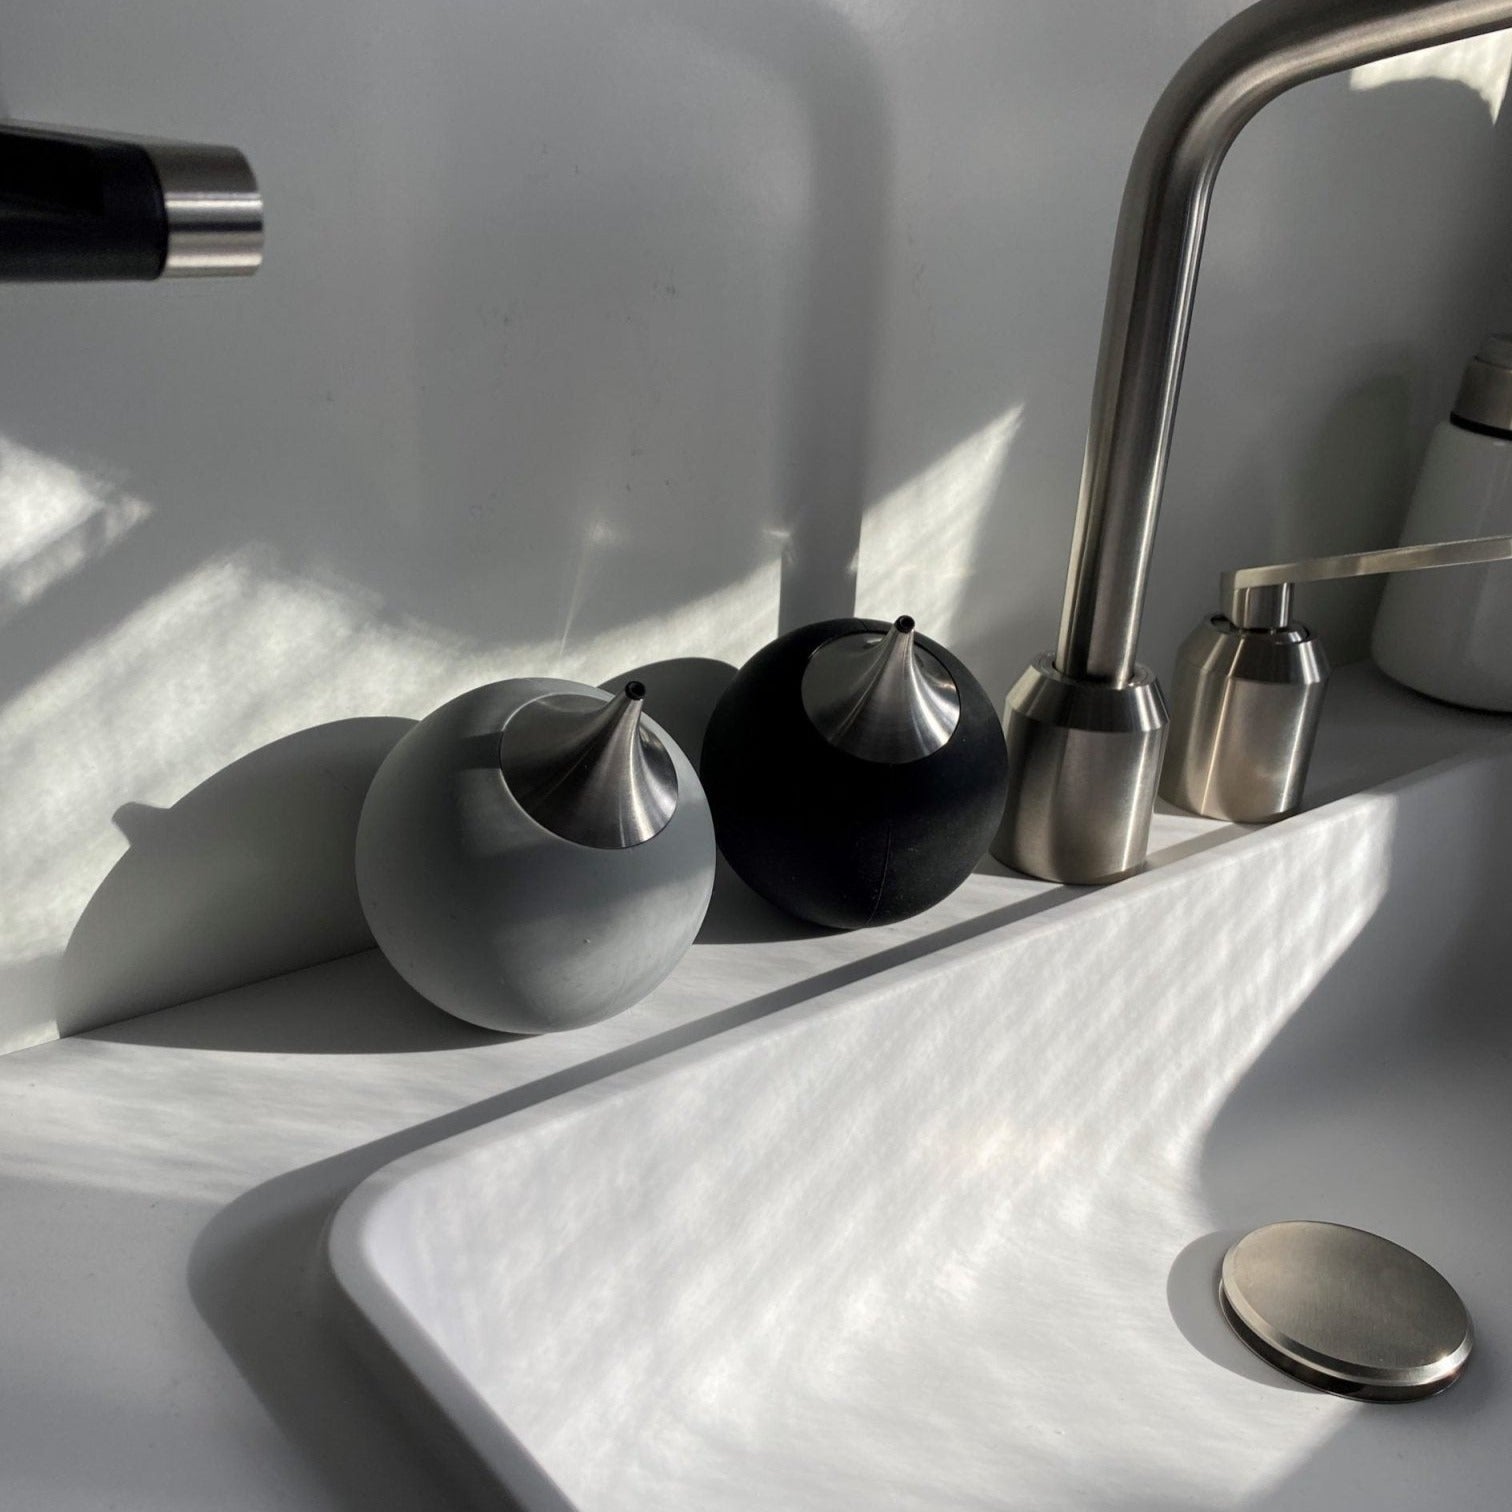 Eva Solo Liquid Soap Squeeze Dispenser | Panik Design